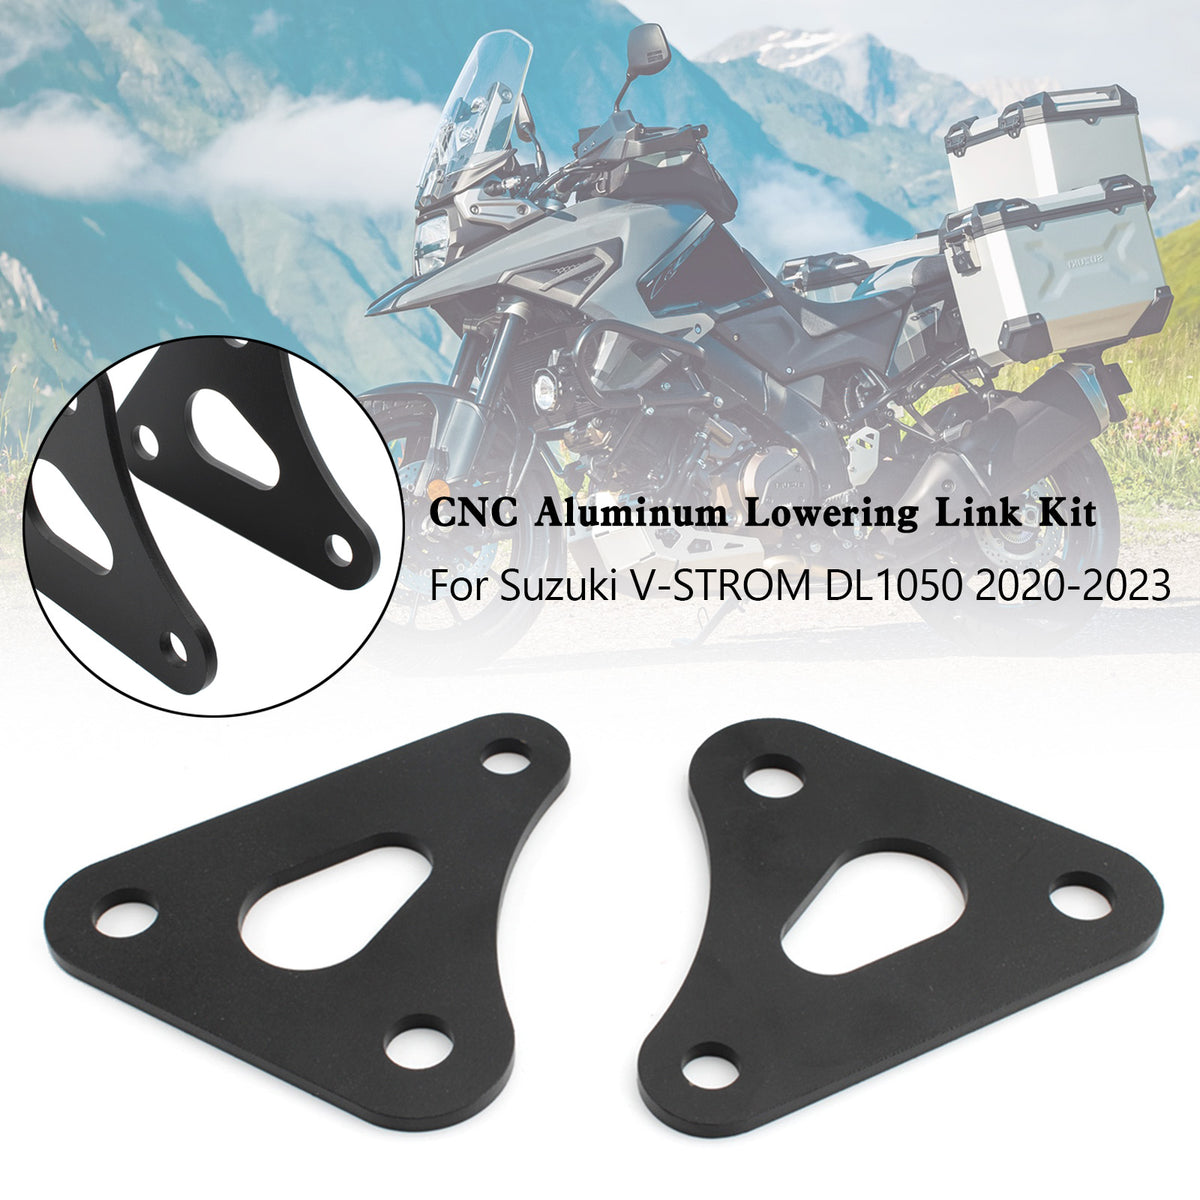 Adjustable CNC Aluminum Lowering Link Kit For Suzuki V-STROM DL1050 2020-2023